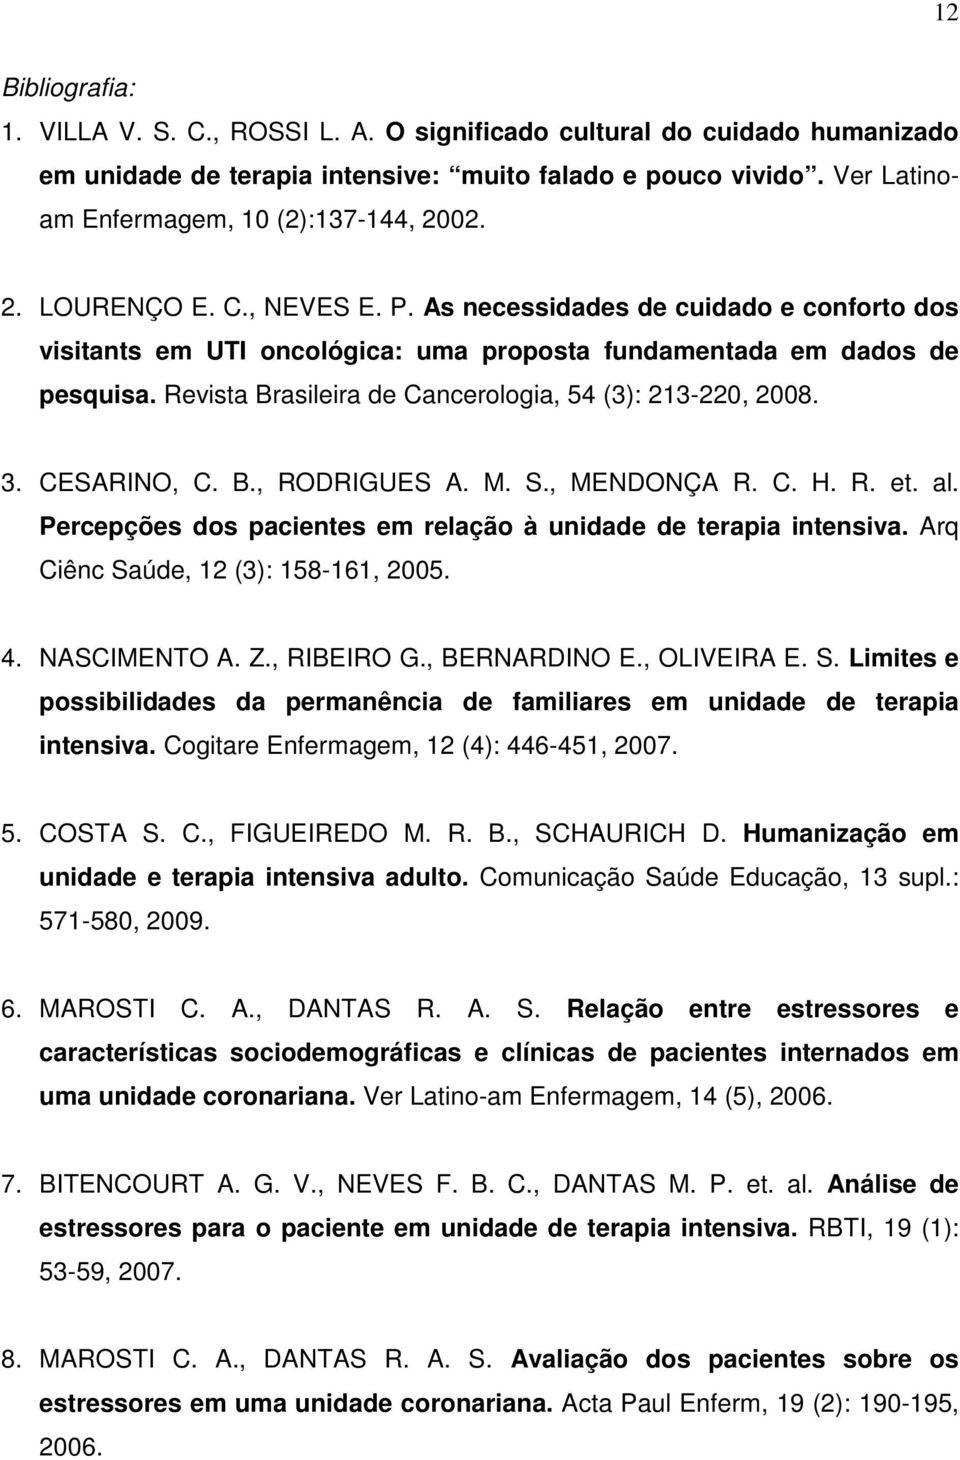 Revista Brasileira de Cancerologia, 54 (3): 213-220, 2008. 3. CESARINO, C. B., RODRIGUES A. M. S., MENDONÇA R. C. H. R. et. al. Percepções dos pacientes em relação à unidade de terapia intensiva.